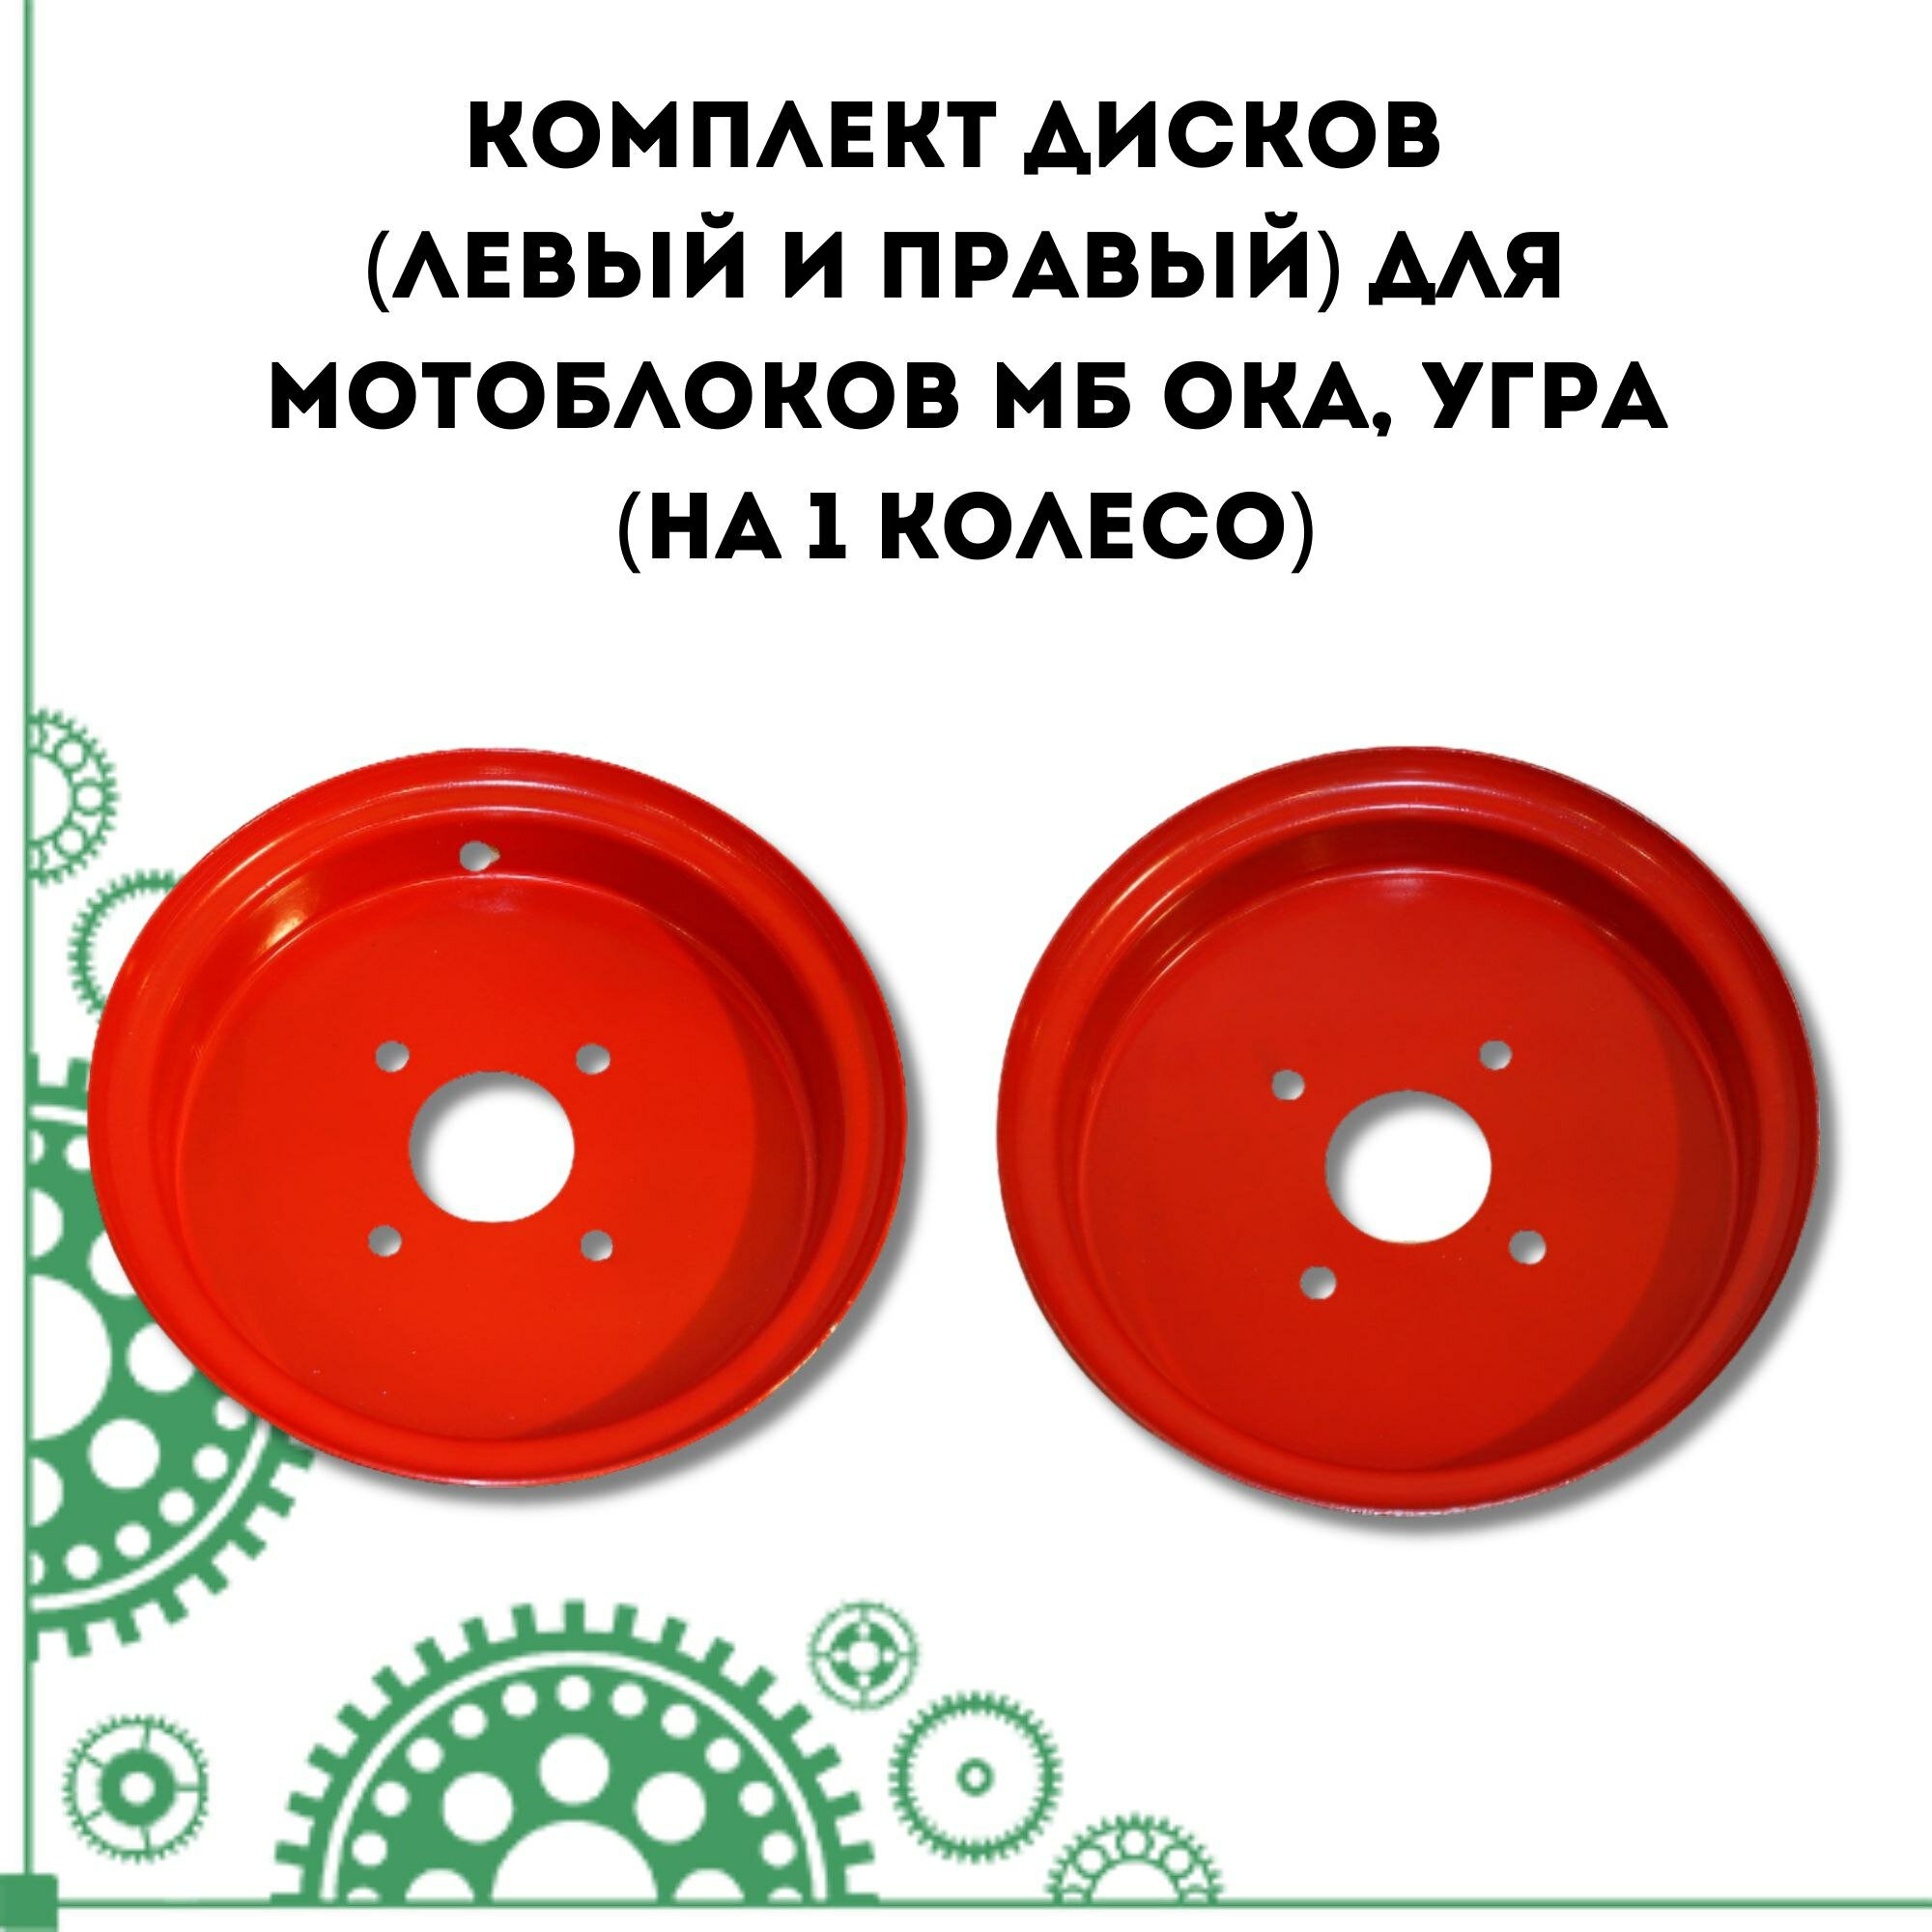 Комплект дисков для мотоблоков МБ ОКА угра (на 1 колесо)